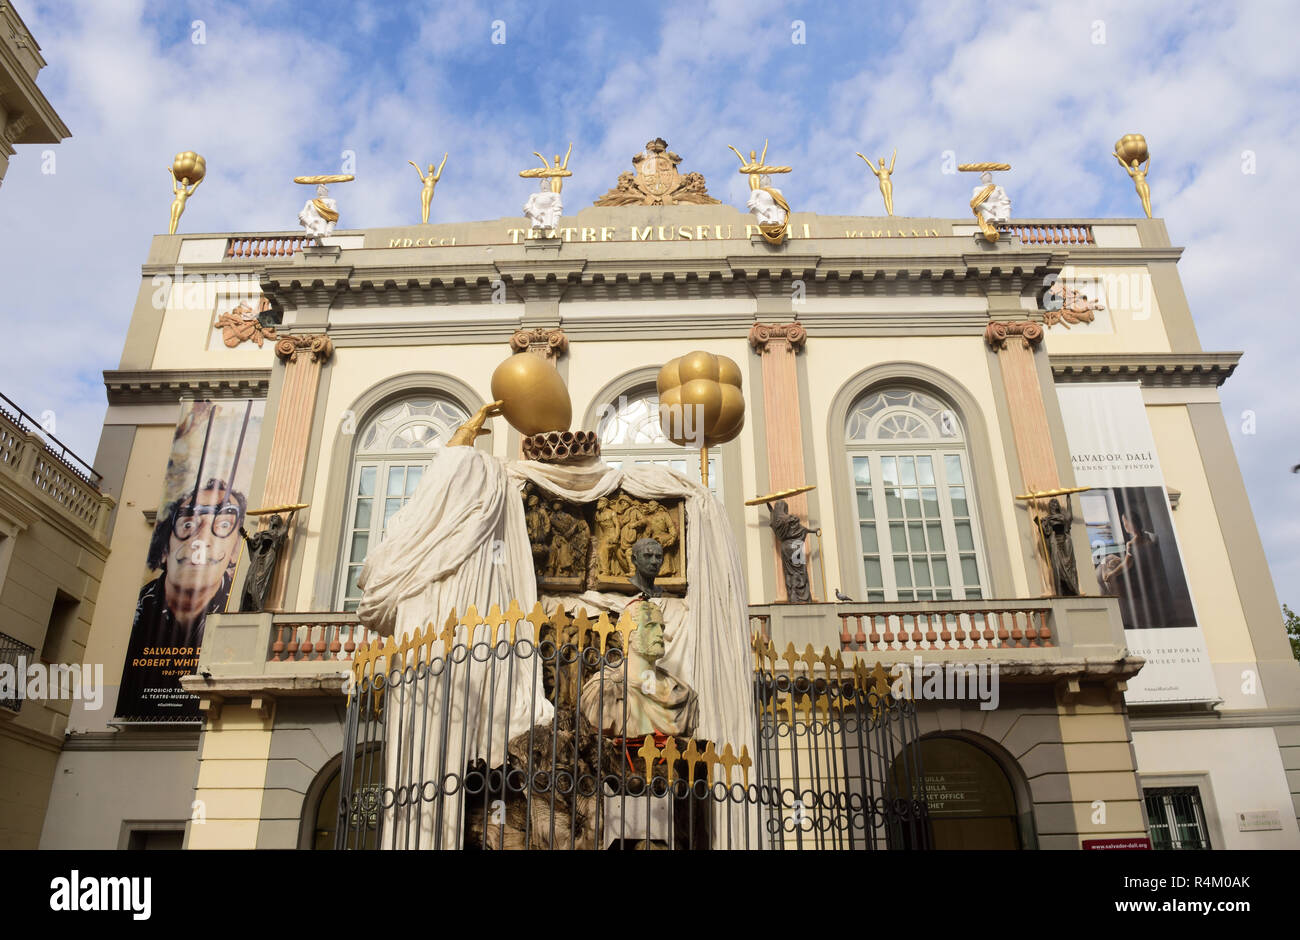 Façade du théâtre musée de Salvador Dali à Figueres, Gérone, Catalogne, Espagne Banque D'Images